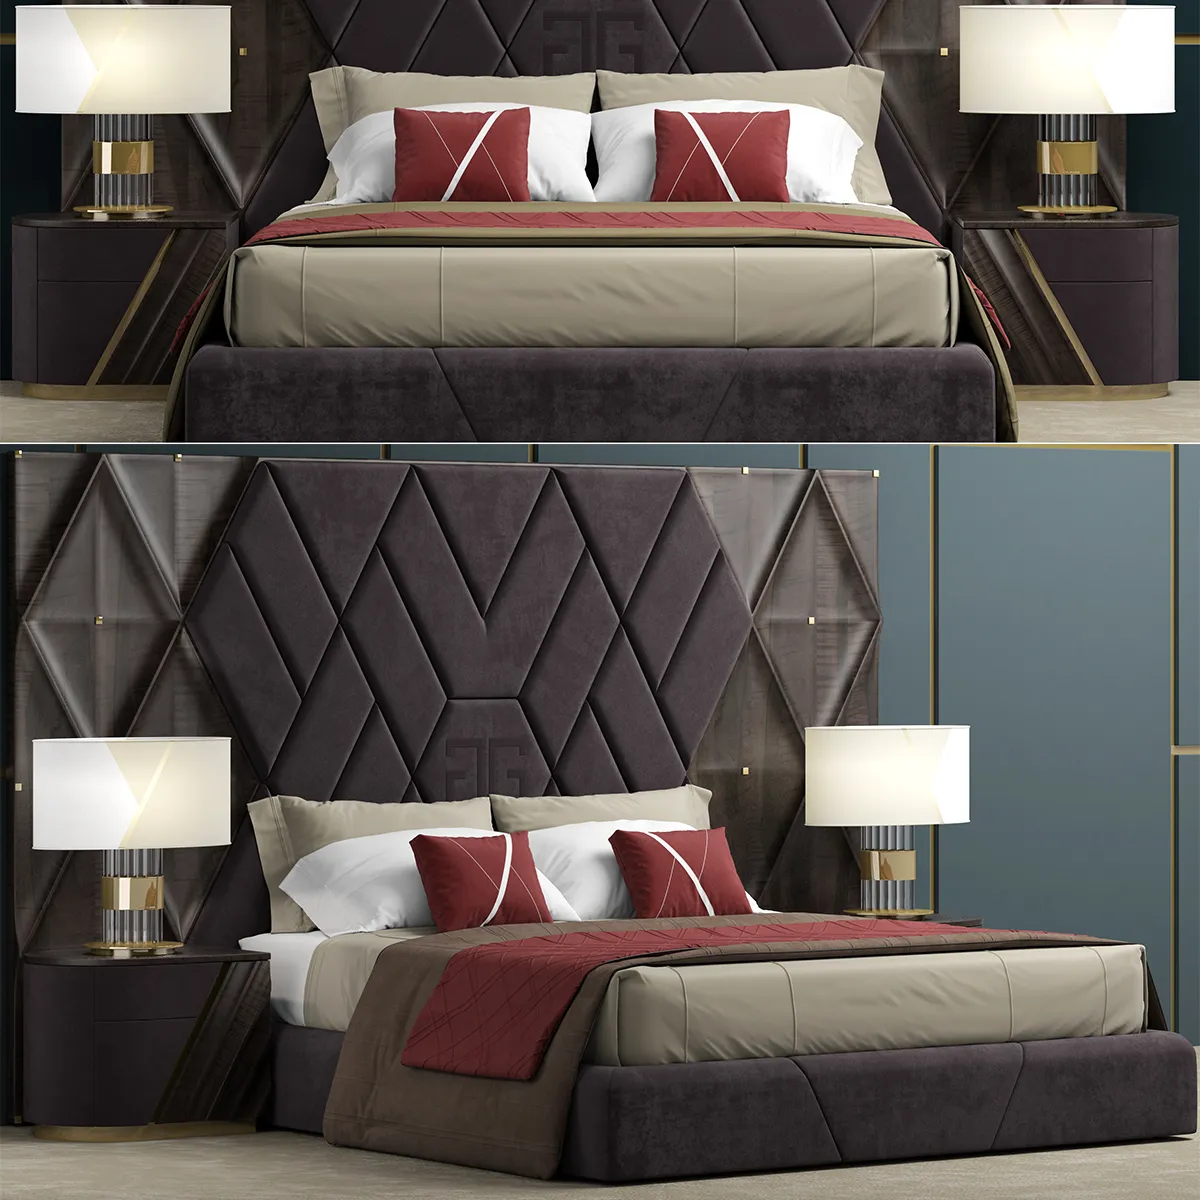 مدل سه بعدی تخت خواب دو نفره Bed Nova 2020